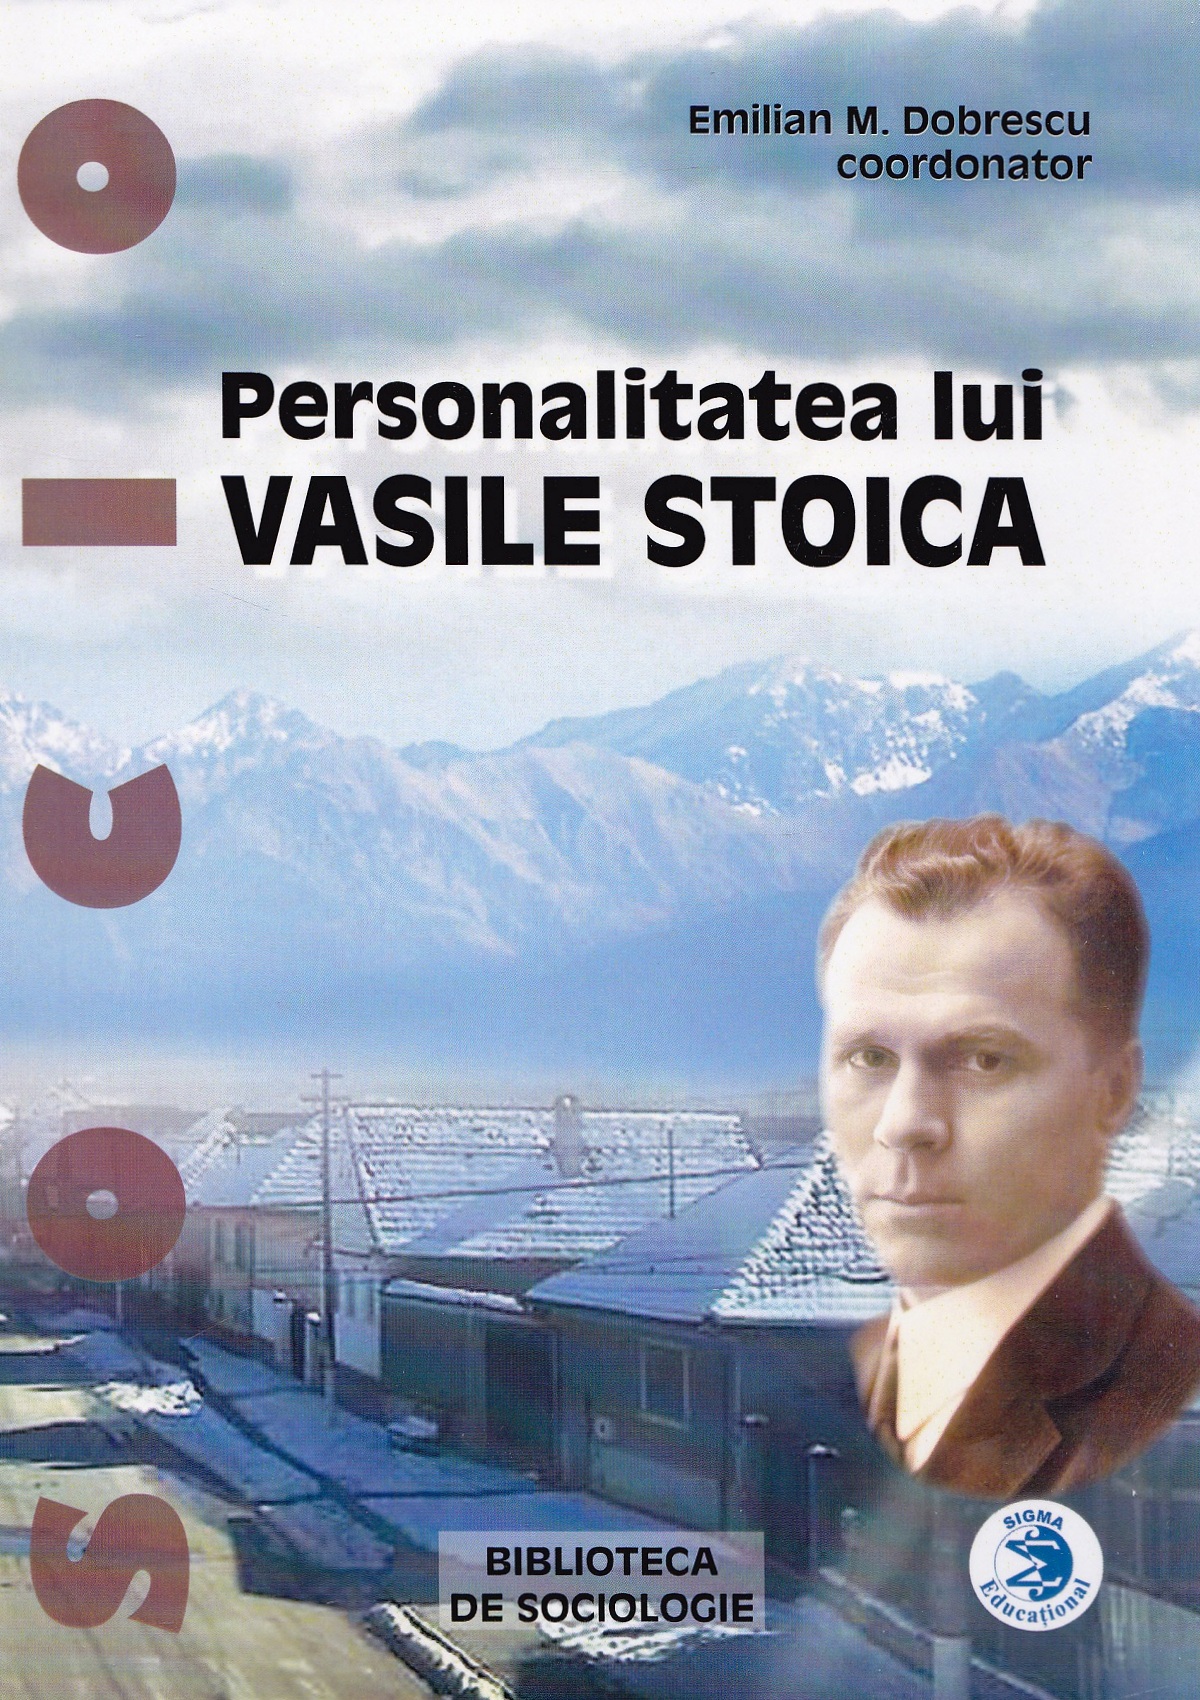 Personalitatea lui Vasile Stoica - Emiliam M. Dobrescu